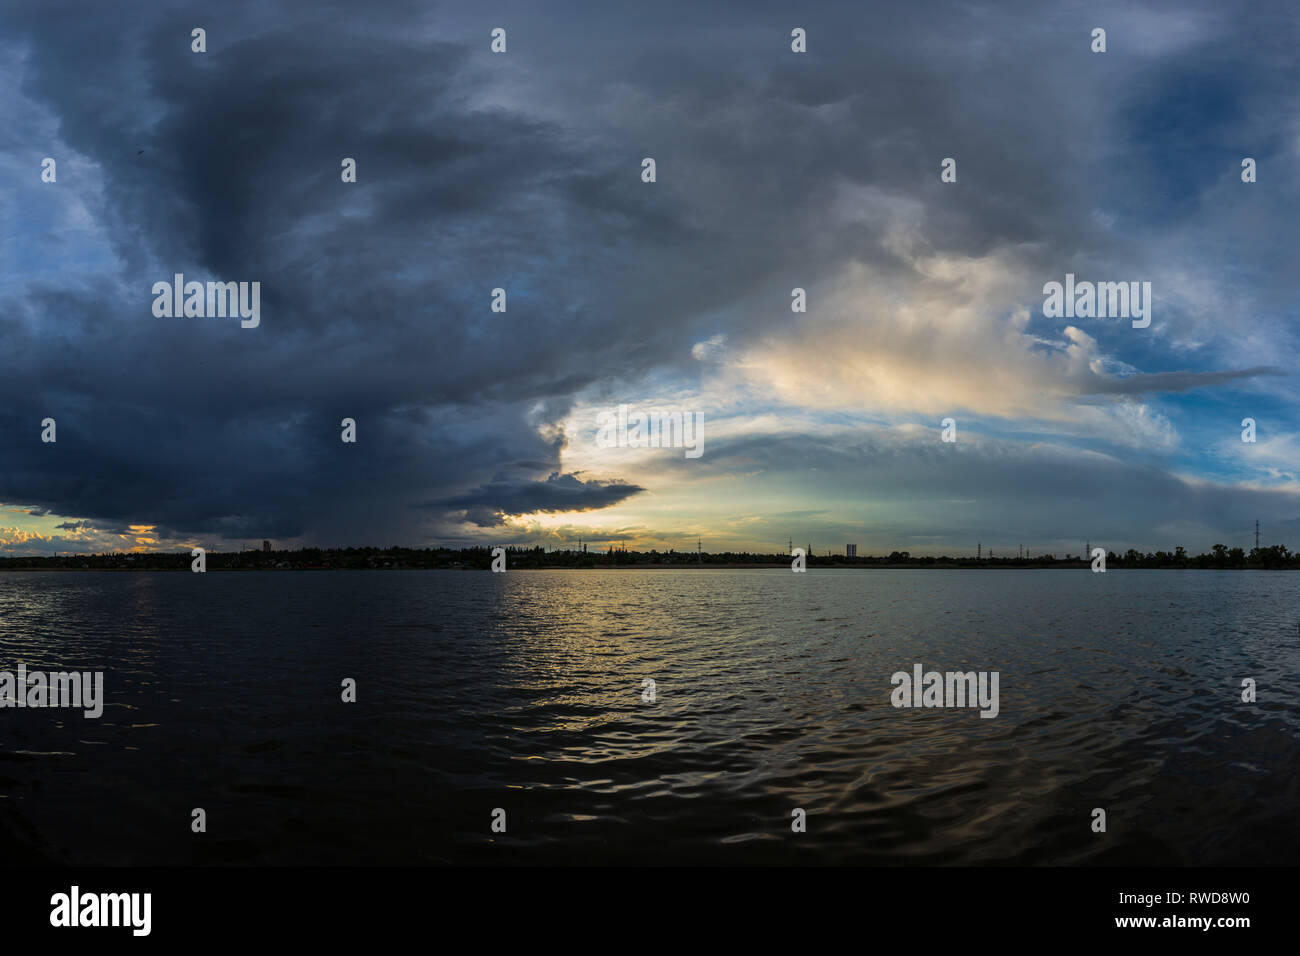 Paysage nuageux sombre épique avec des nuages d'orage sur le lac qui a mis en lumière par la lumière du soleil, dans la rivière Kriviy Rih, région de Dnipropetrovsk, Ukraine Banque D'Images